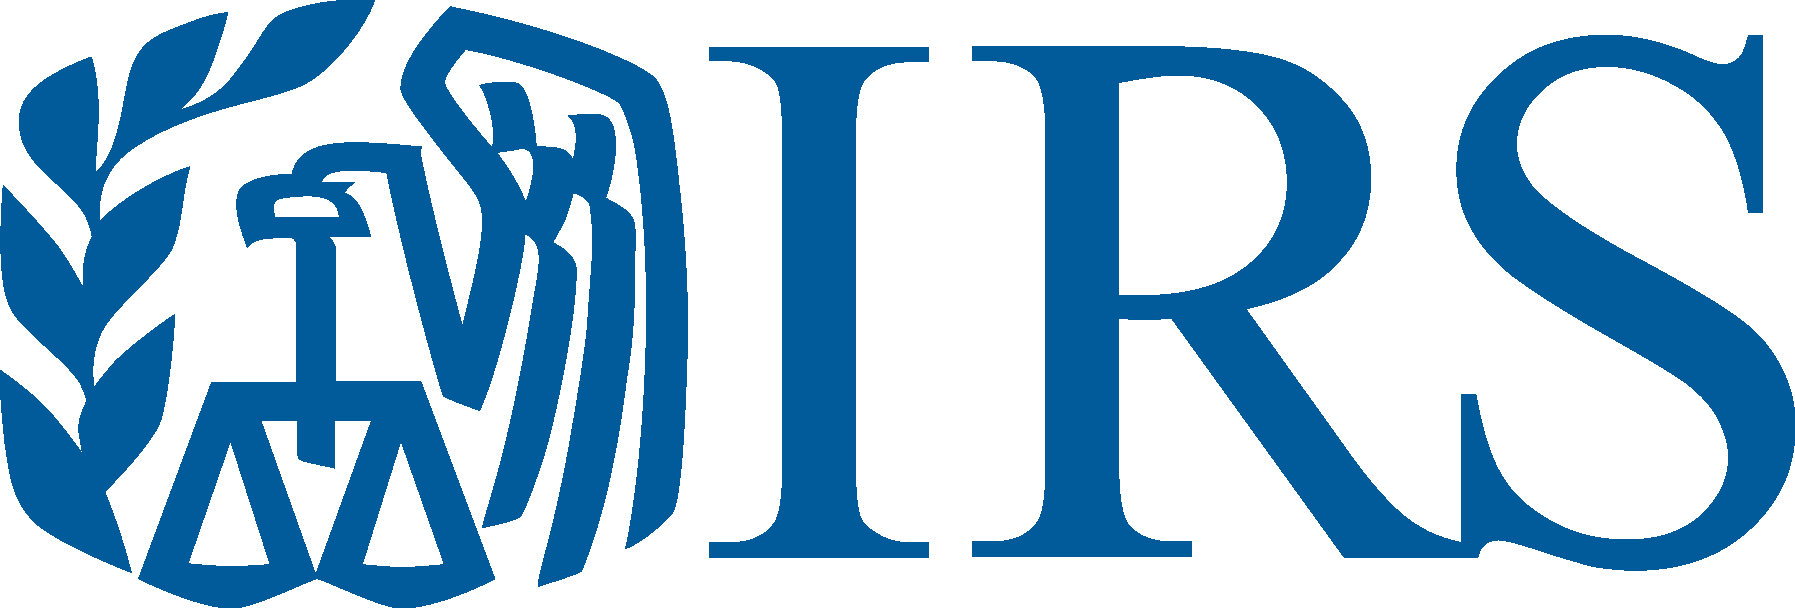 internal-revenue-service-logo-irs-logo